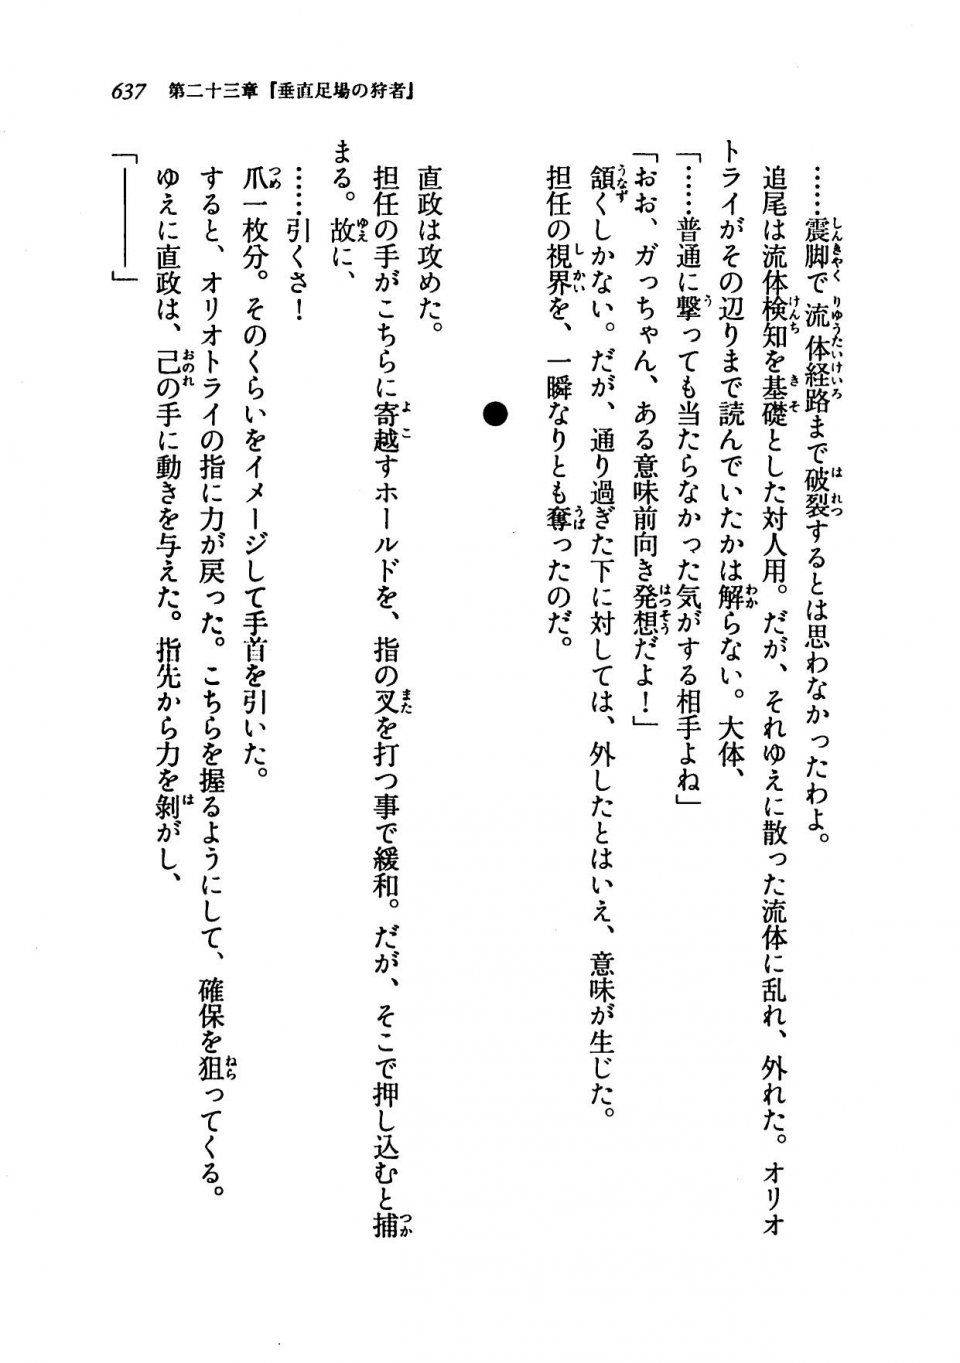 Kyoukai Senjou no Horizon LN Vol 19(8A) - Photo #637